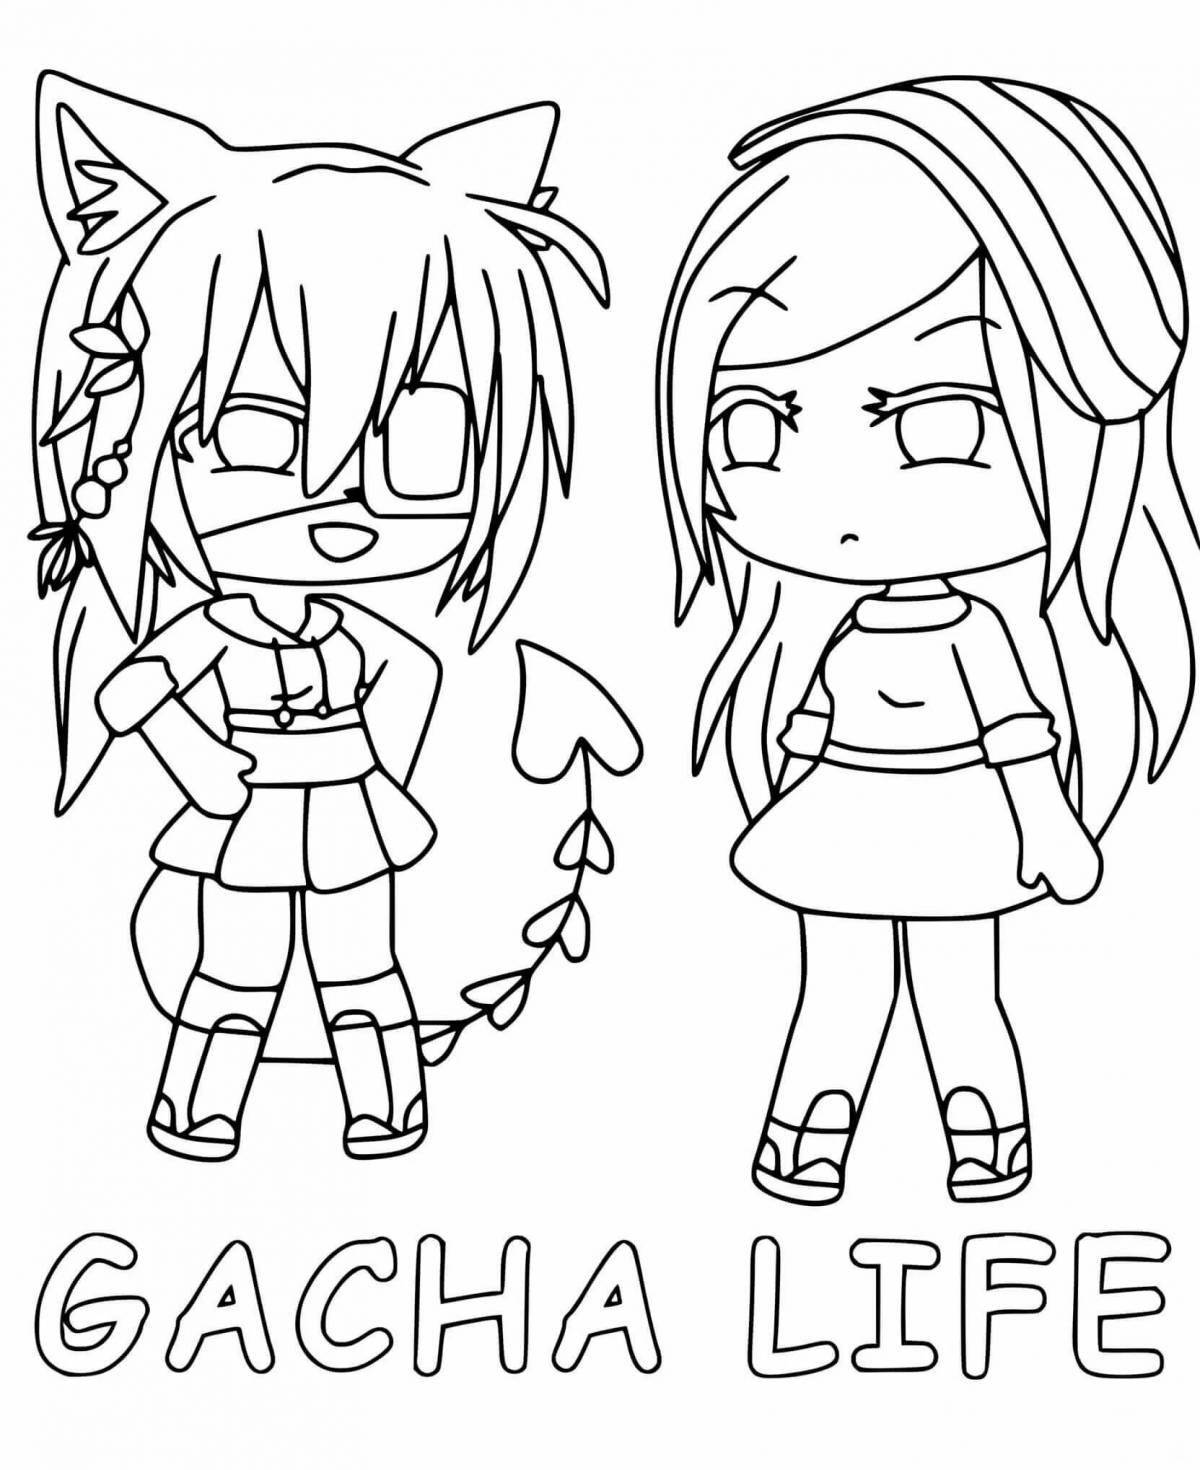 Gacha life for girls #1